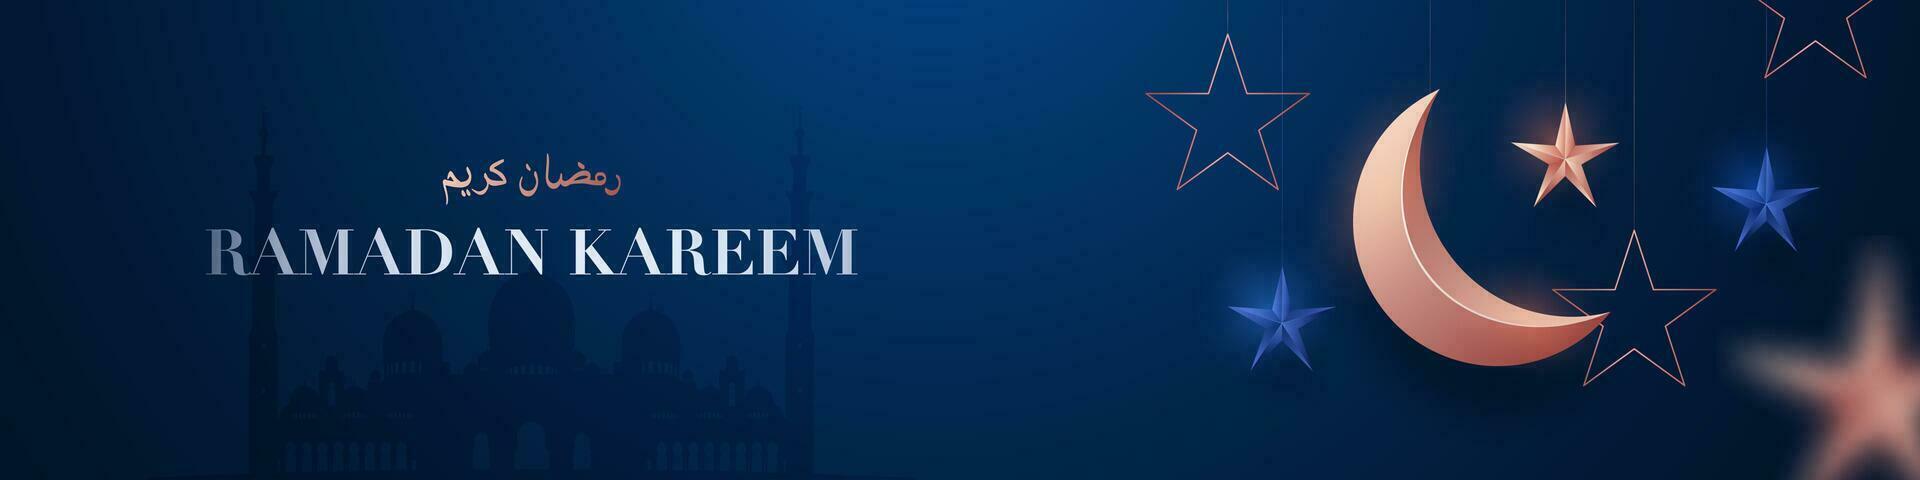 Ramadan kareem horizontaal banier met 3d roos goud halve maan maan, sterren en confetti Aan donker blauw achtergrond. vector